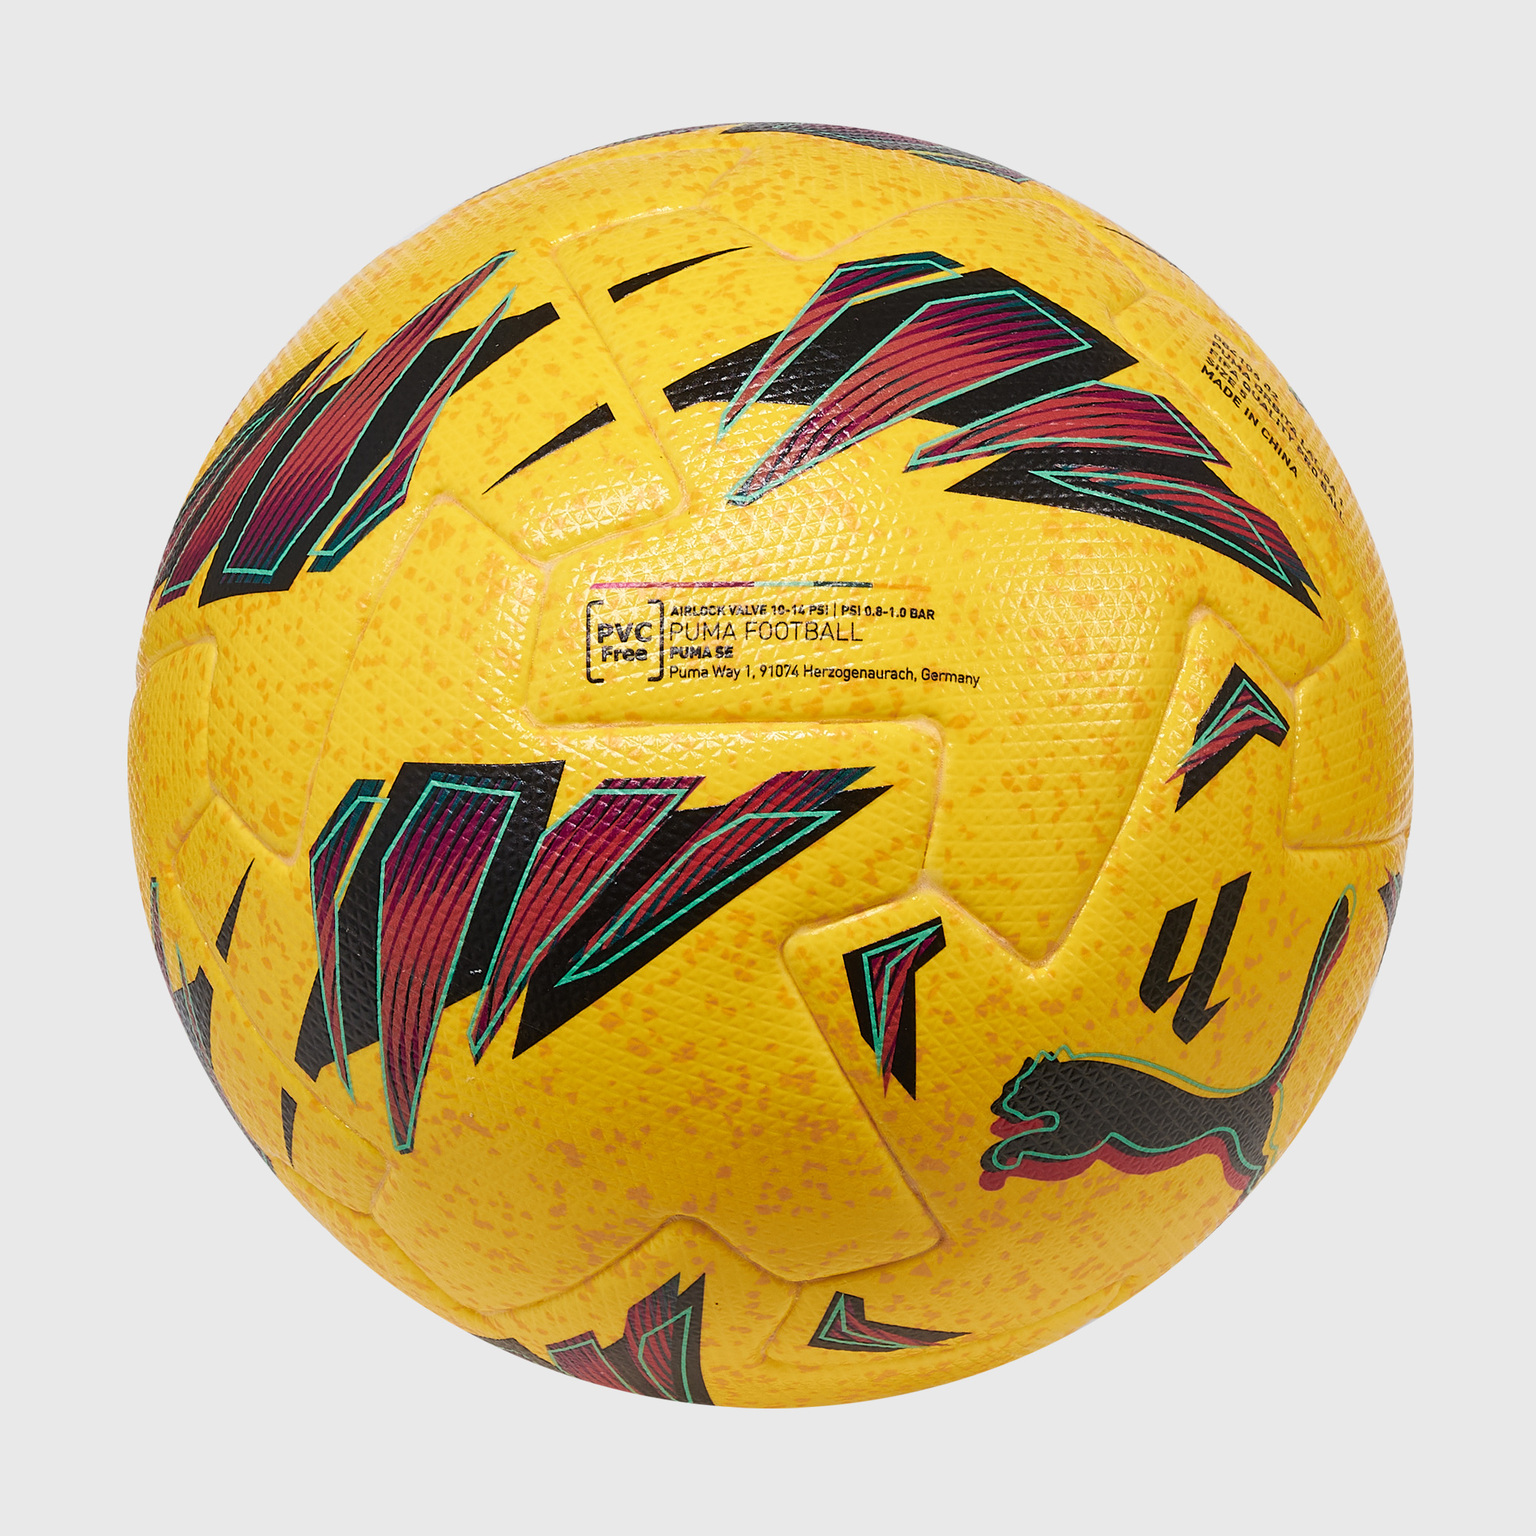 Футбольный мяч Puma Orbita Laliga 1 08410602